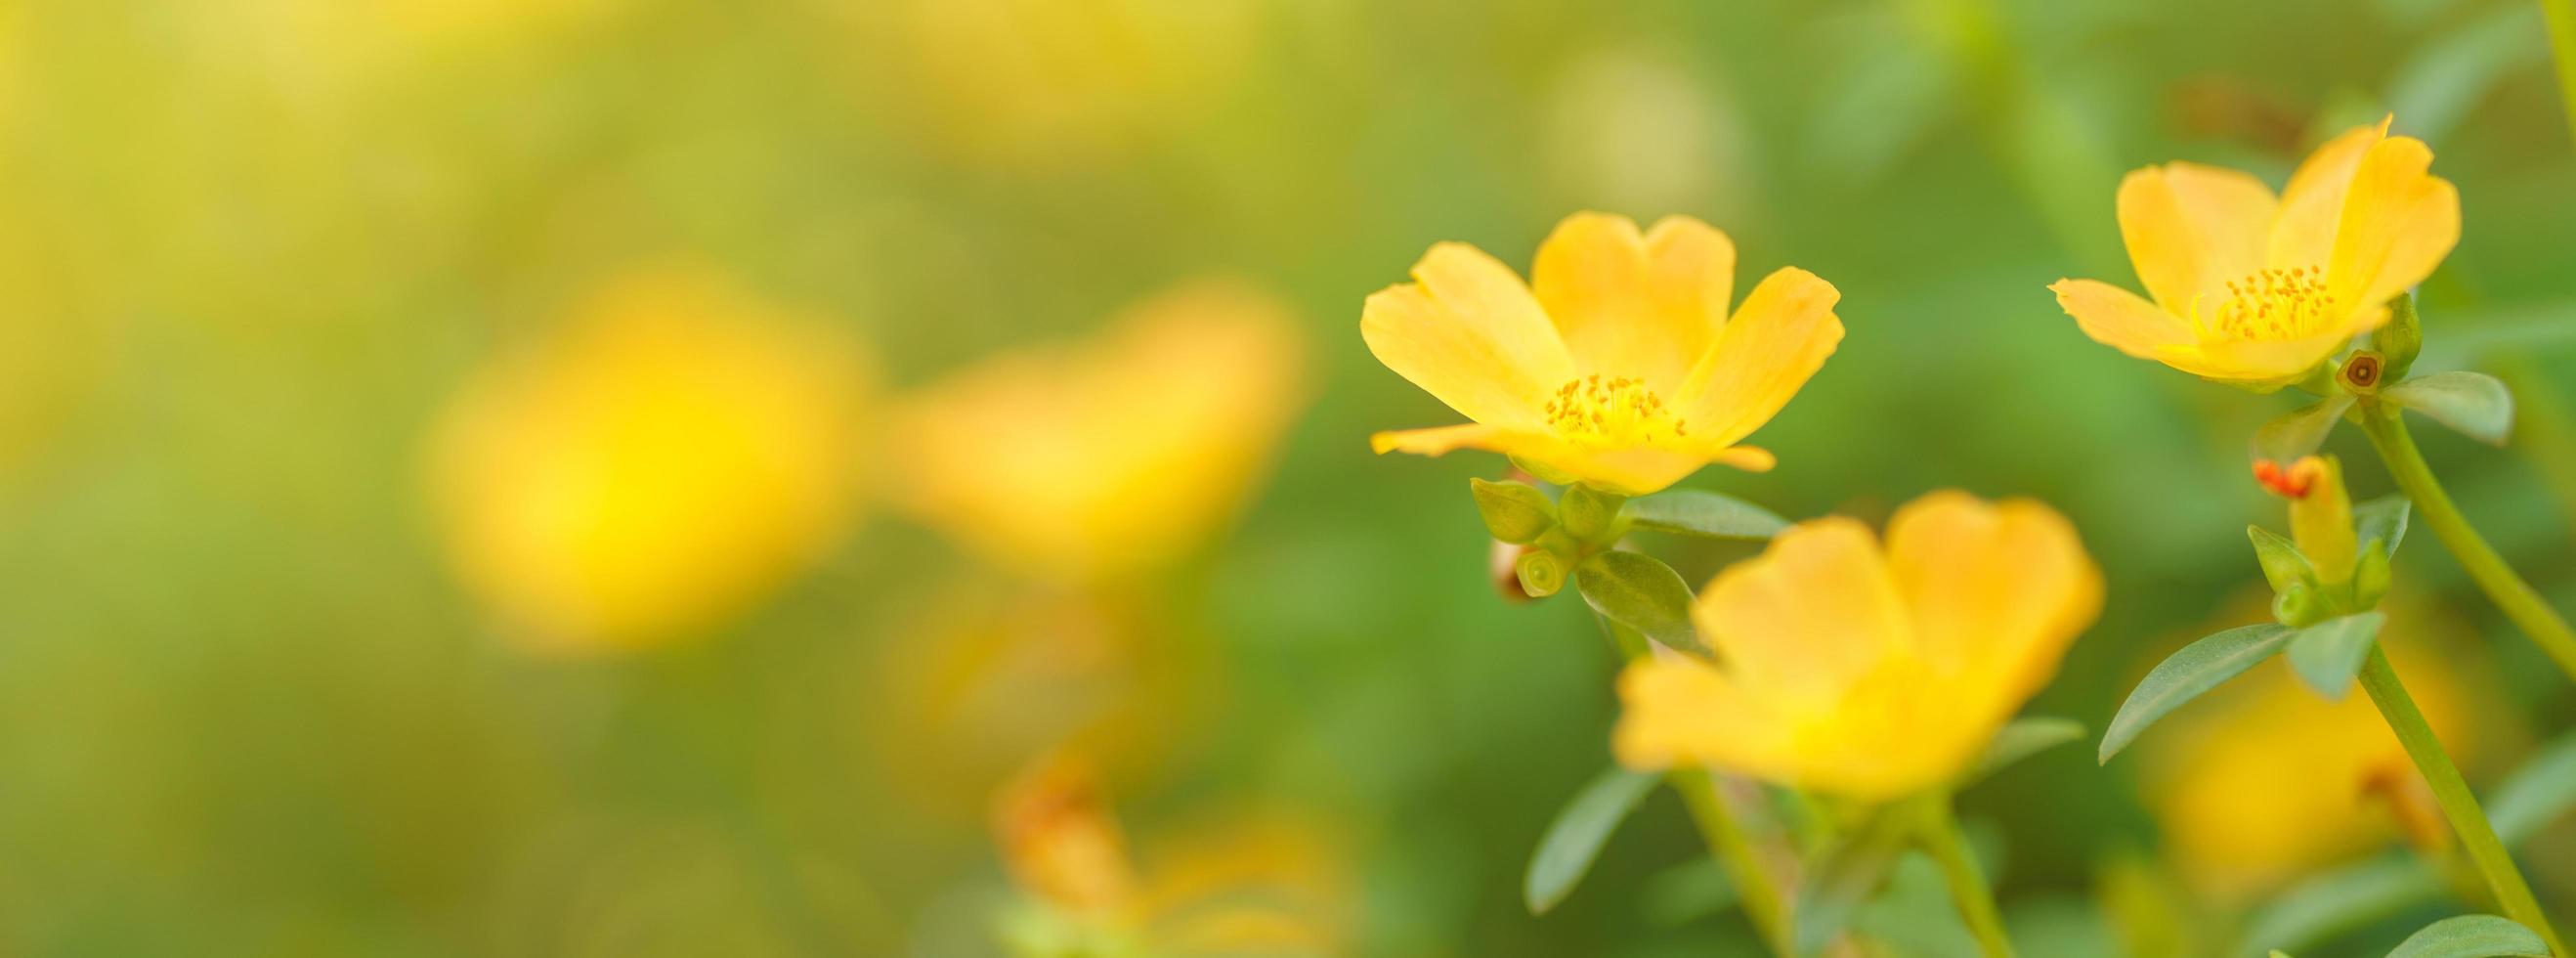 primer plano de flor amarilla con hoja verde bajo la luz del sol con espacio de copia utilizando como fondo el paisaje de plantas naturales, concepto de página de portada de ecología. foto